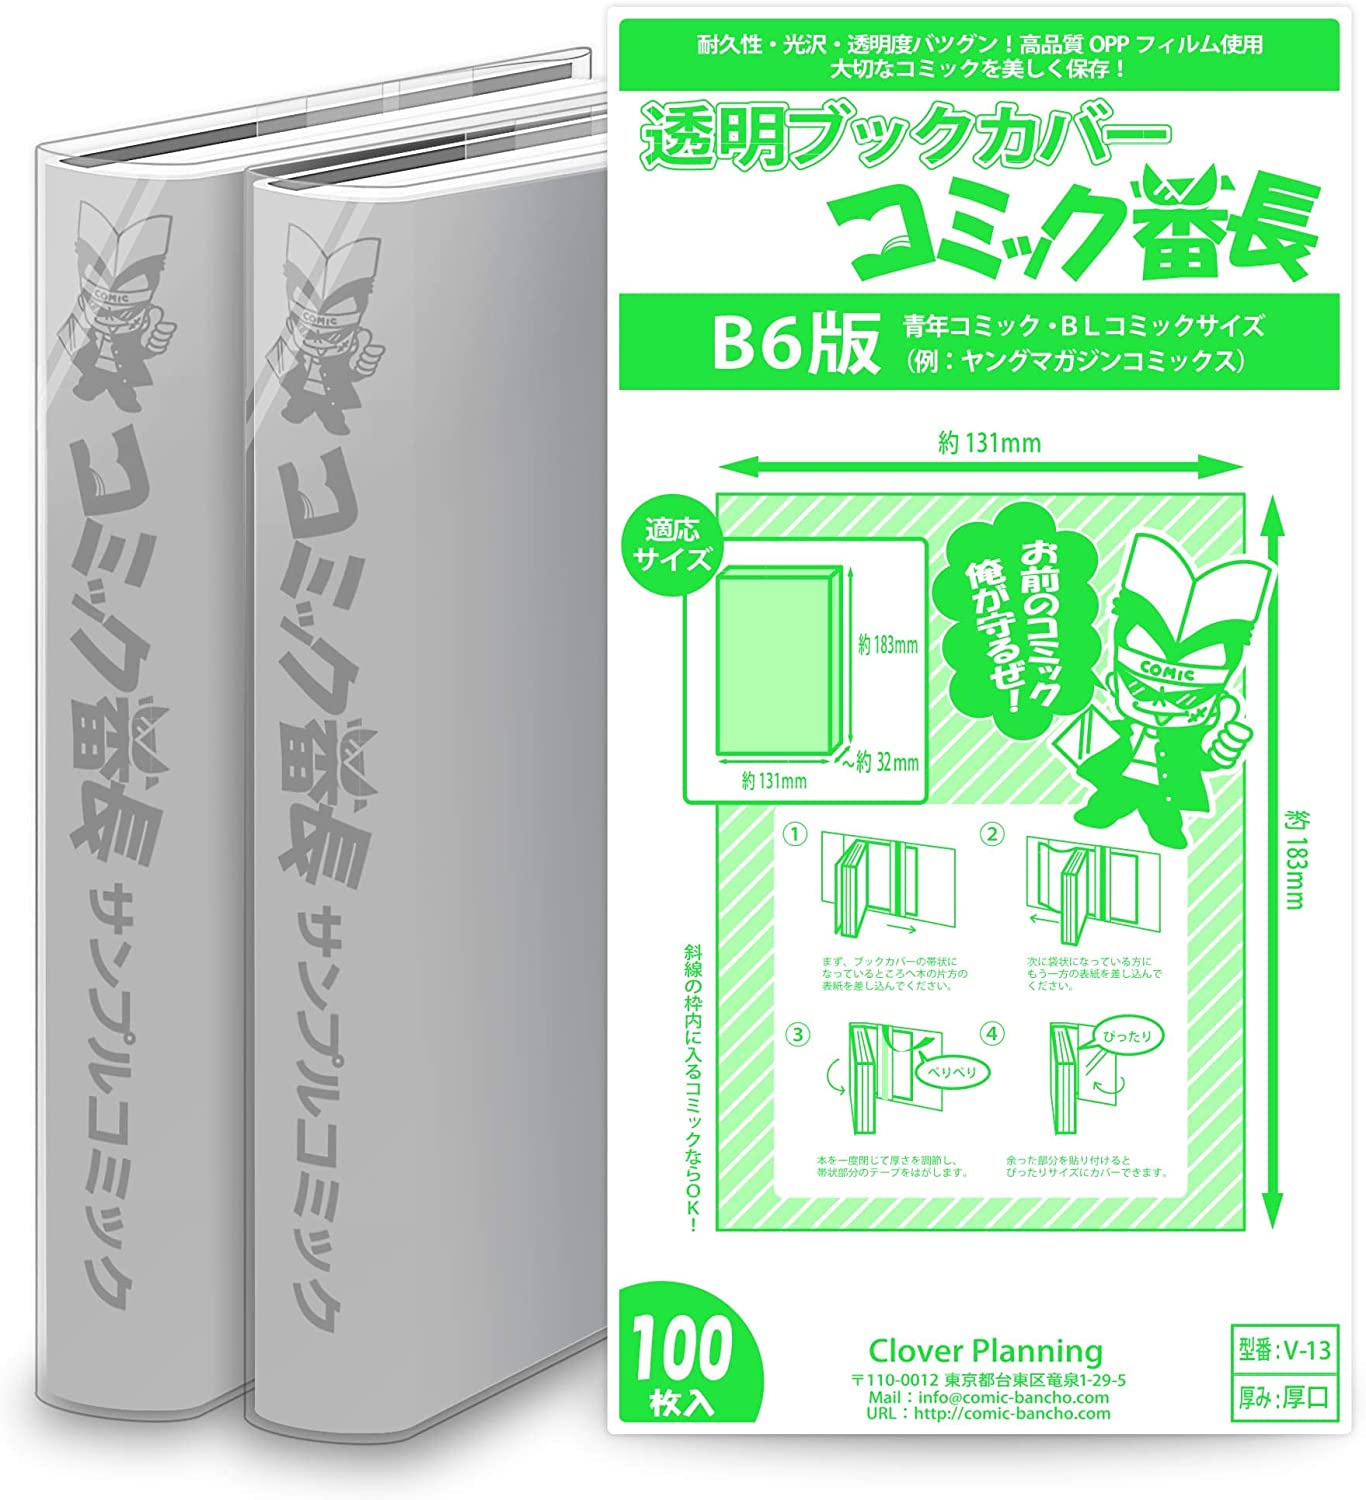 Manga Clear Protective Covers x10 - fits Shonen Jump/Viz manga books